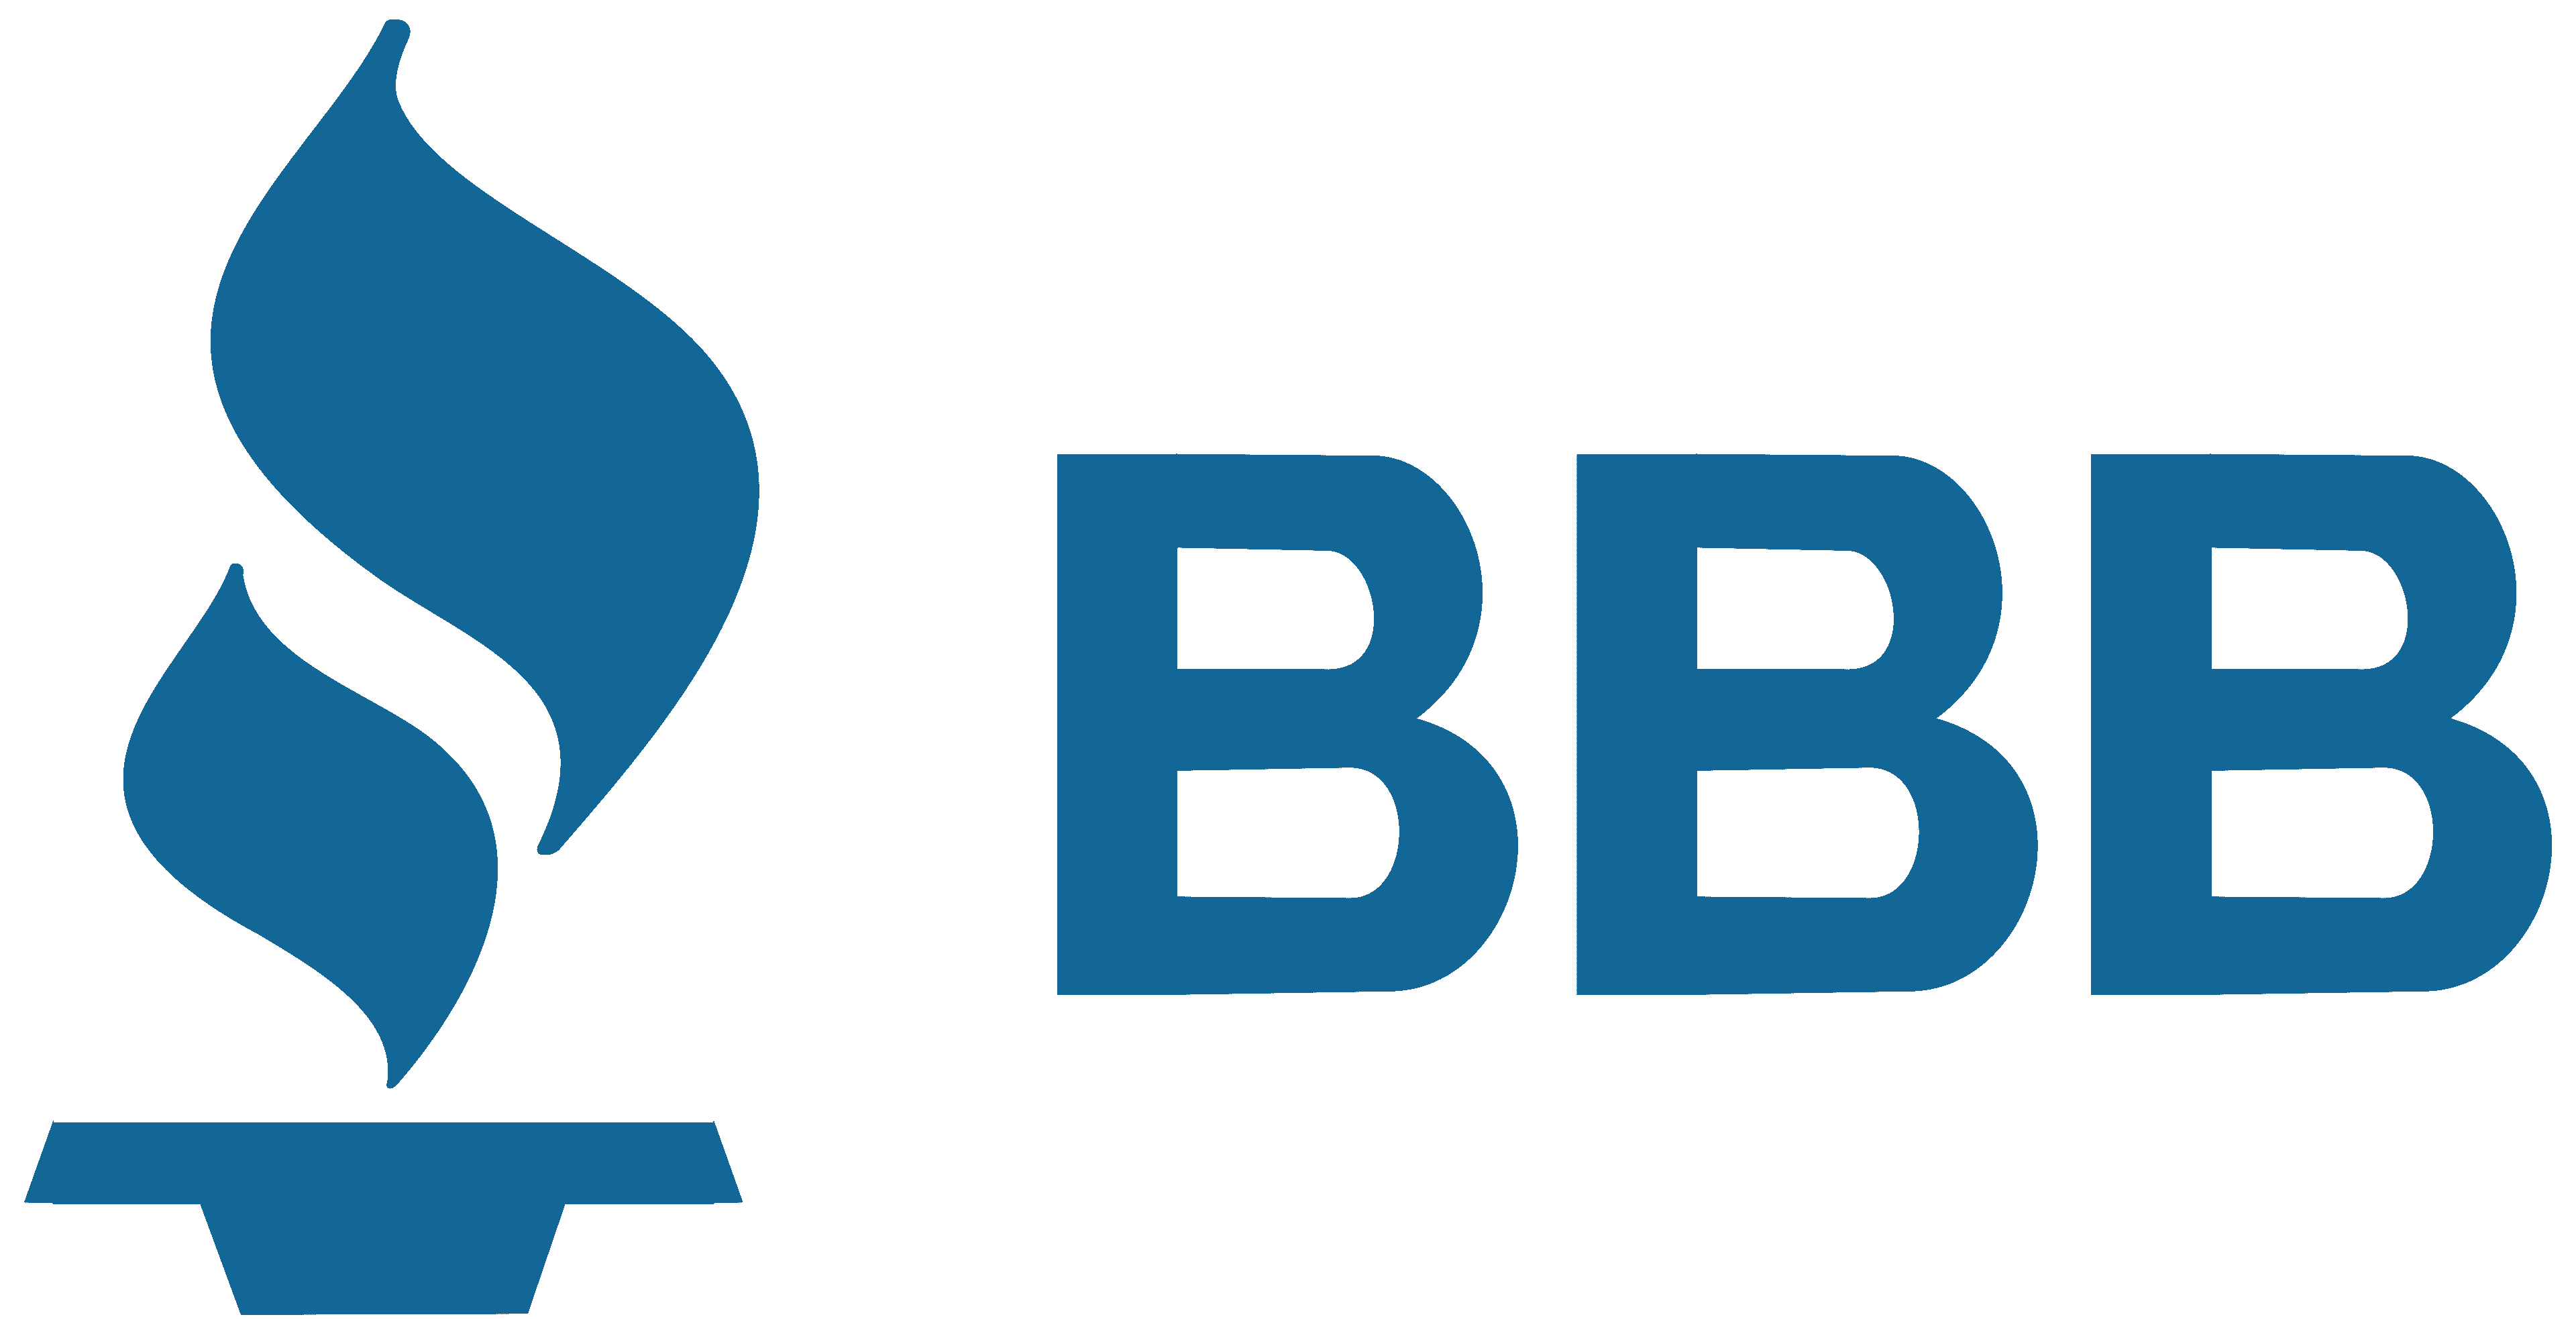 Better-Business-Bureau-Emblem